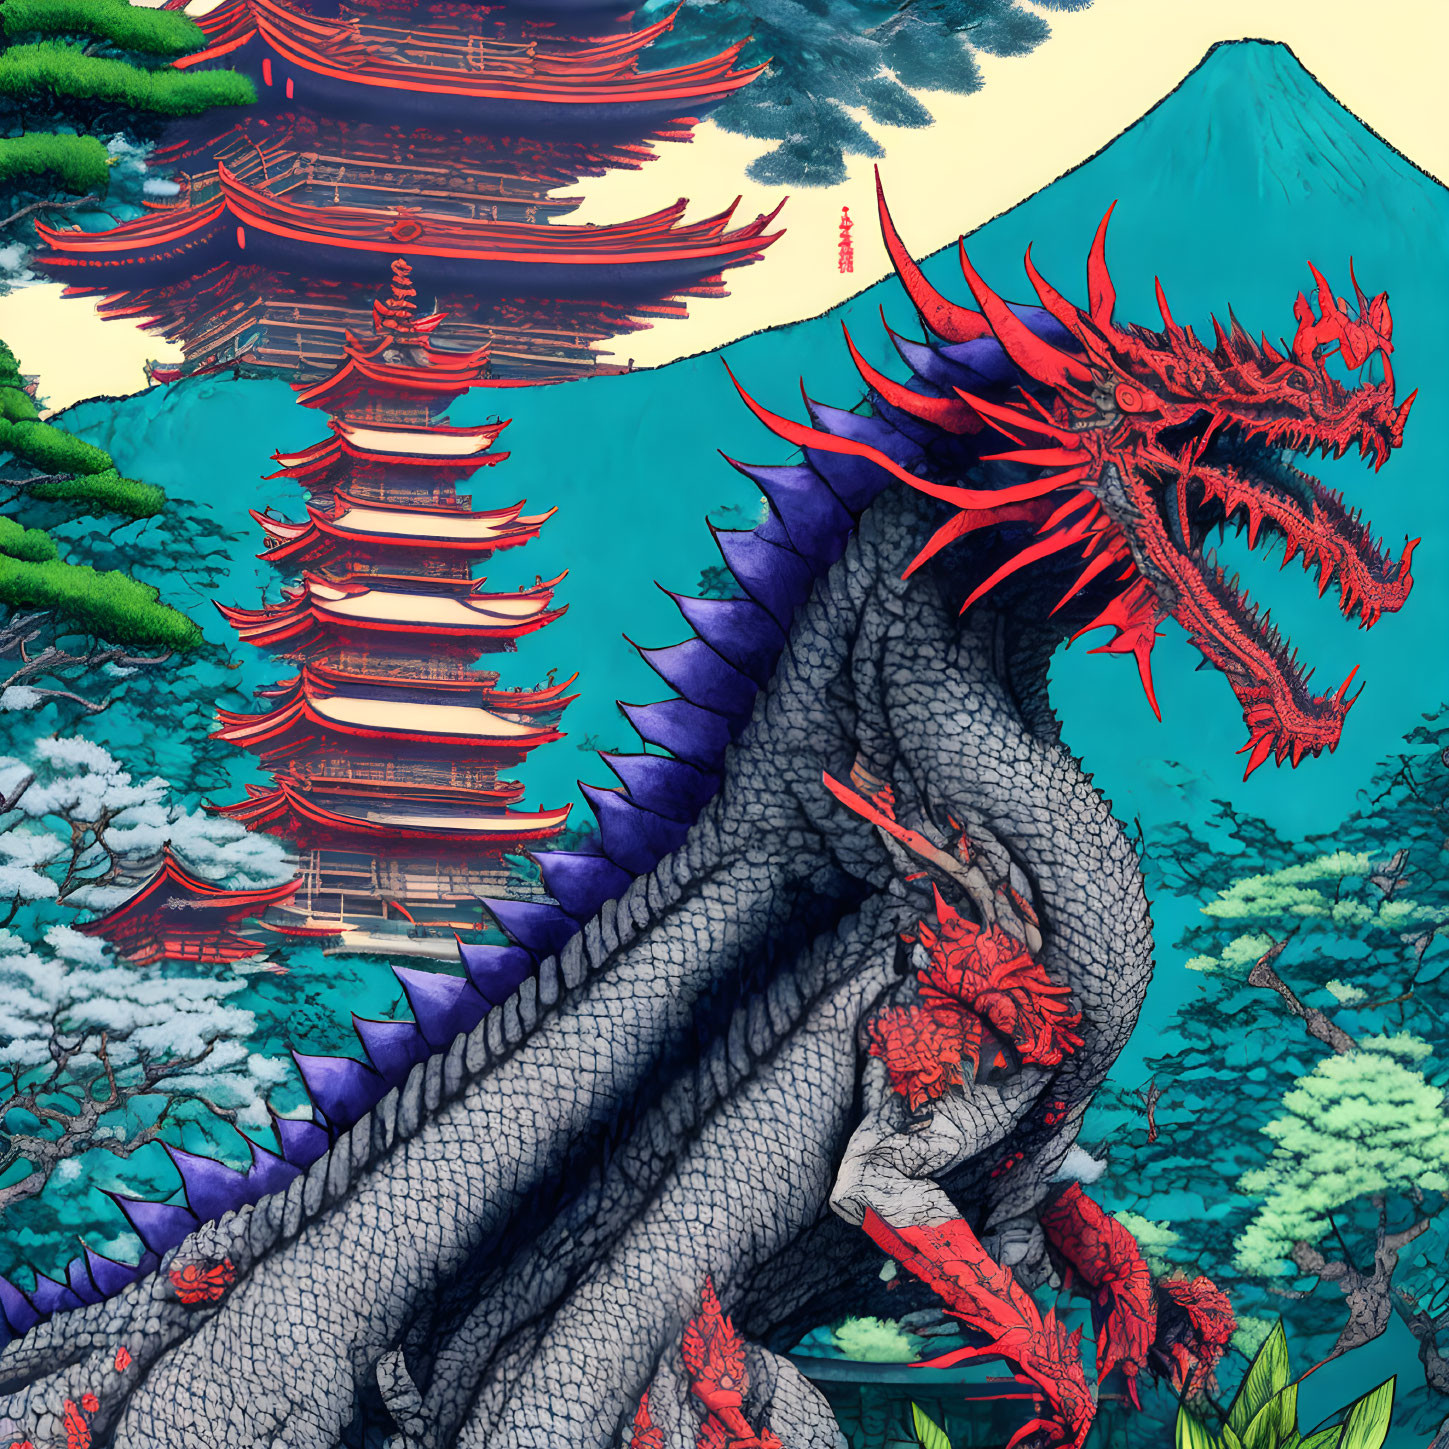 Zatoichi versus the Dragon